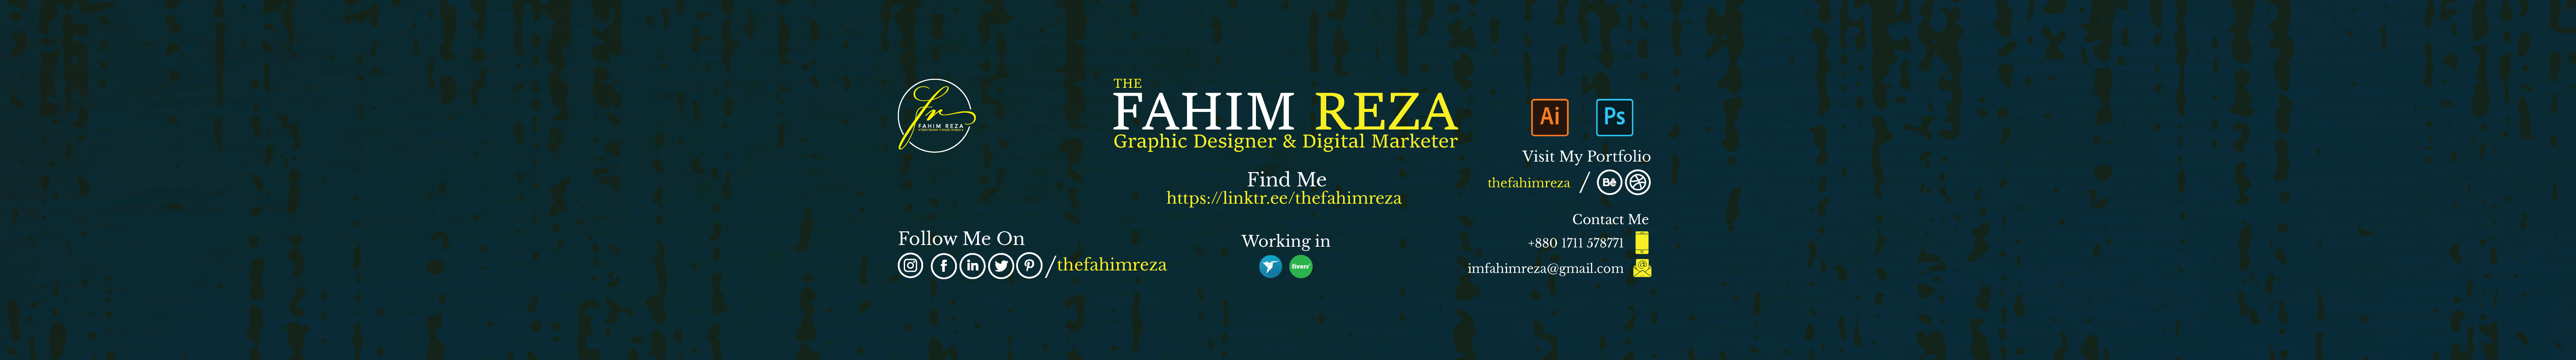 Md Fahim Reza 的個人檔案橫幅